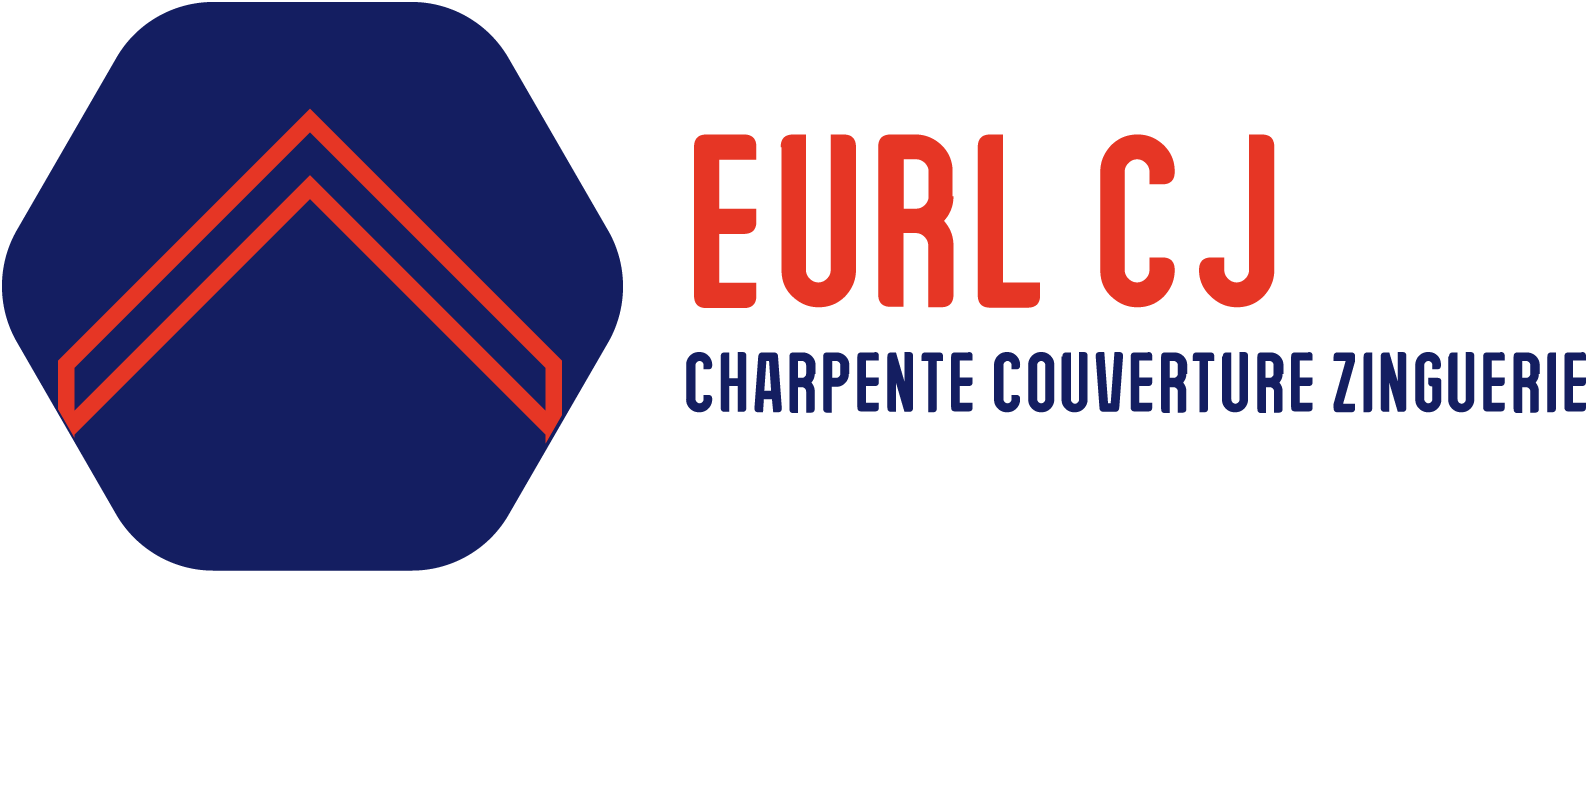 EURL CJ Charpente Couverture Zinguerie